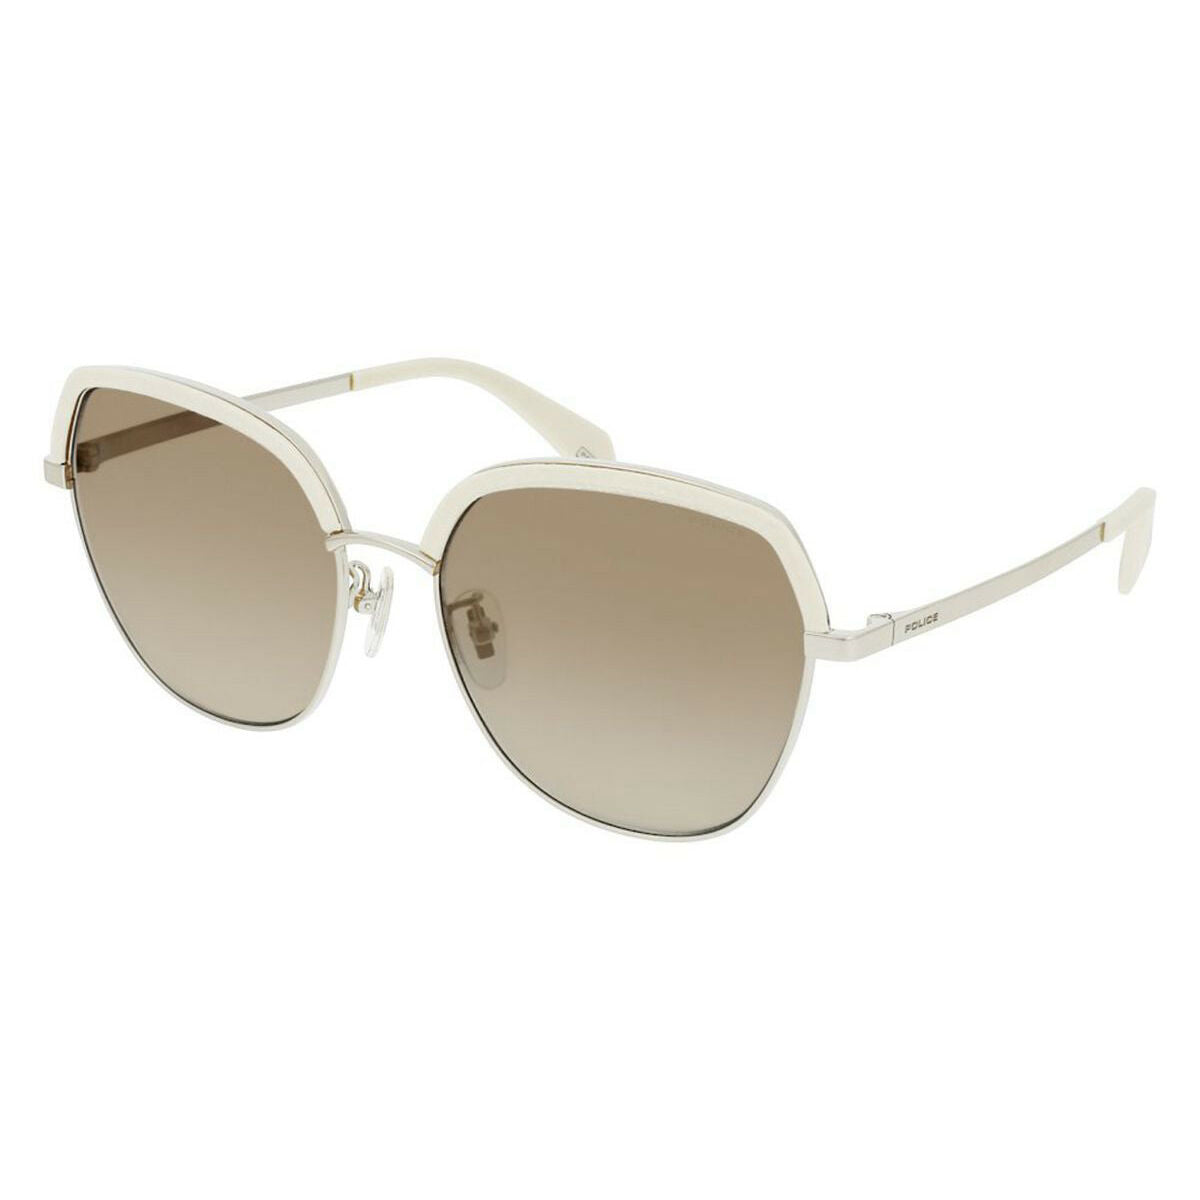 Women's sunglasses SPLC24-56GL4X Ø 56 mm